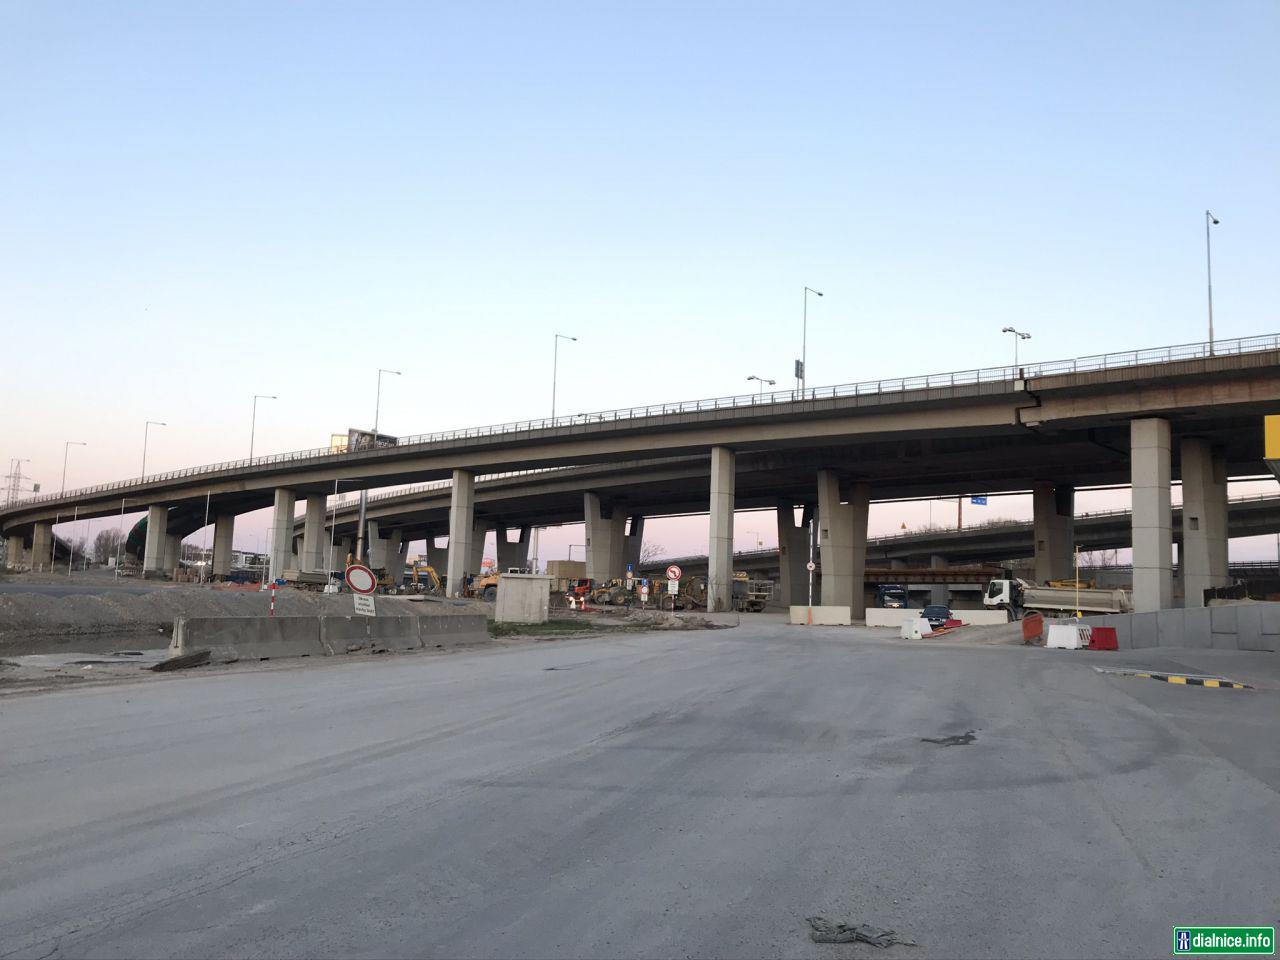 Koniec Prístavnej ul. a začiatok R7 pod Prístavným mostom 24.3.2020